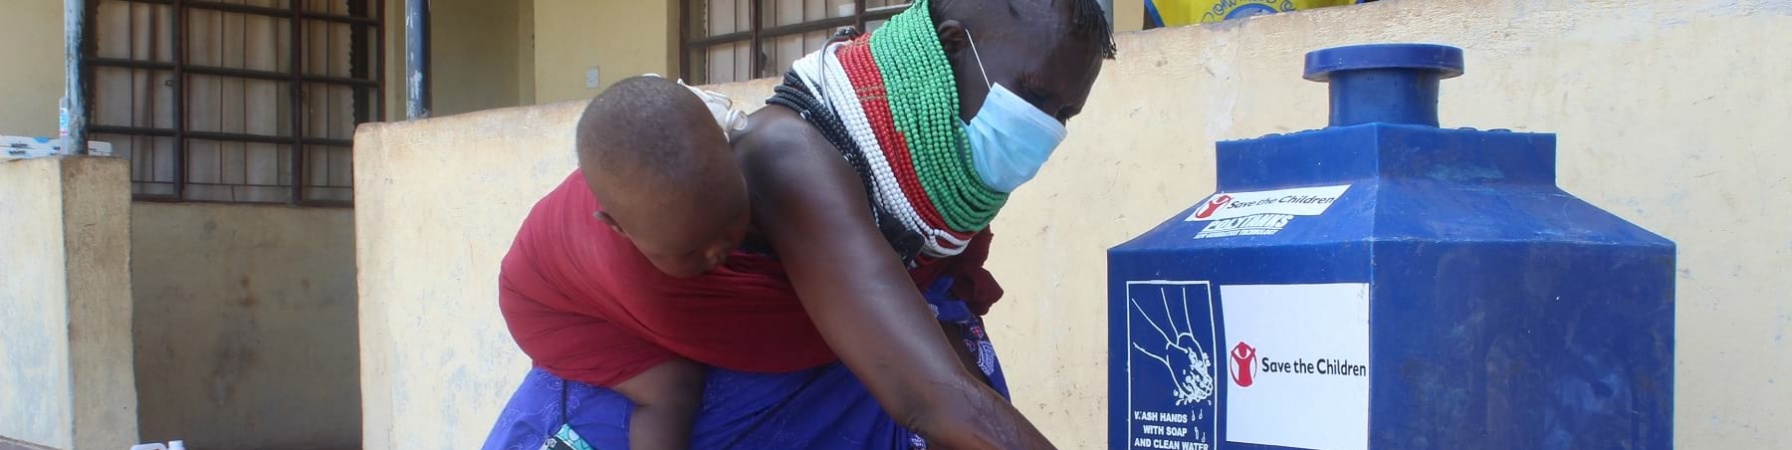 Mamma africana con bambino in fascia sulla schiena lava le mani con fontana mobile save the children.